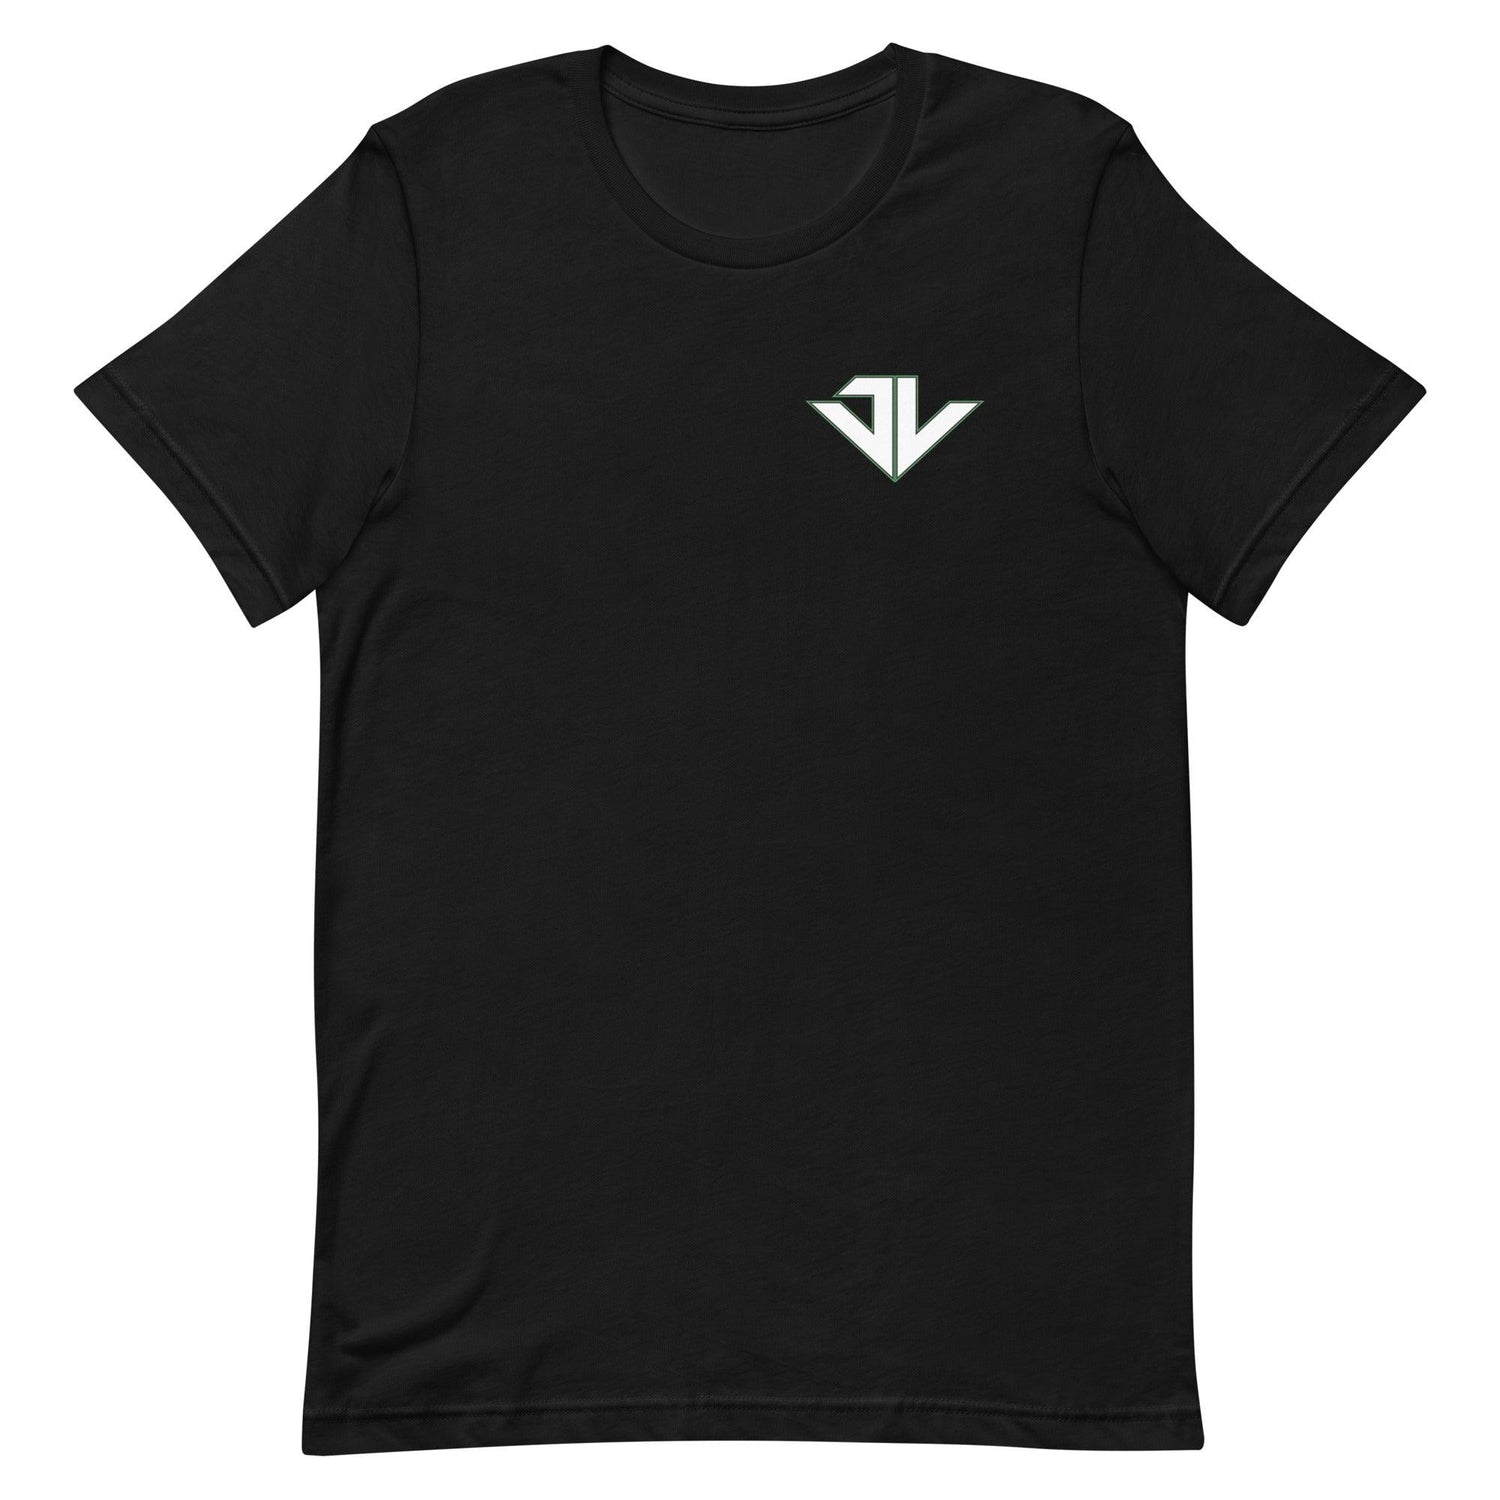 Johned Walker "Elite" t-shirt - Fan Arch